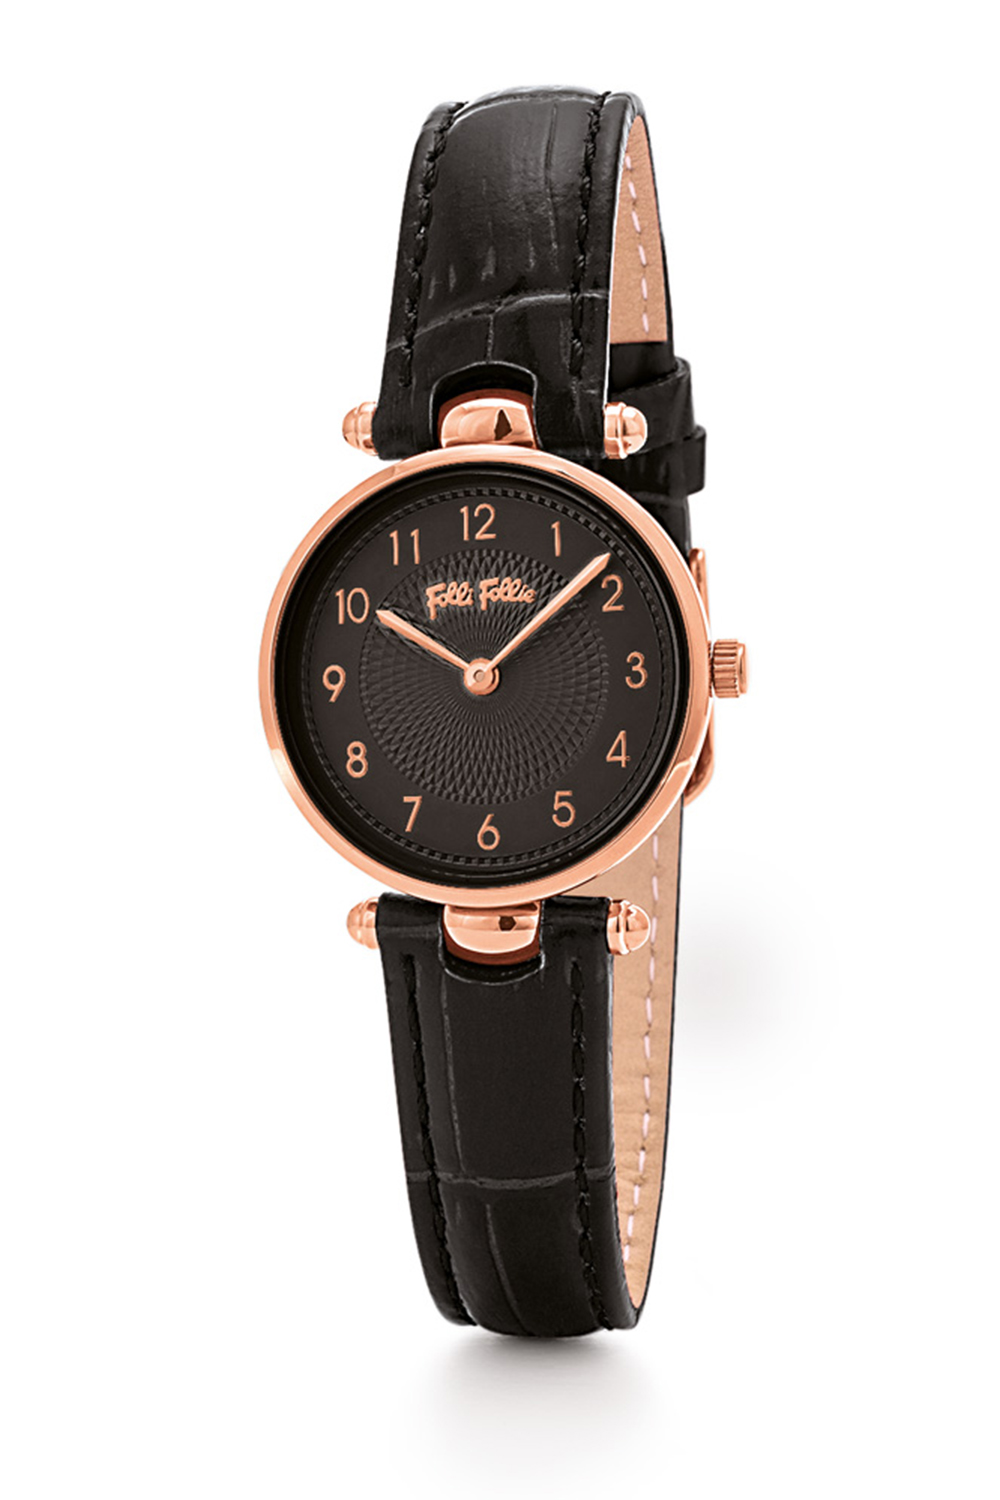 FOLLI FOLLIE – Γυναικείο ρολόι με δερμάτινο λουράκι FOLLI FOLLIE LADY CLUB μαύρο WF17R014SSK-BK